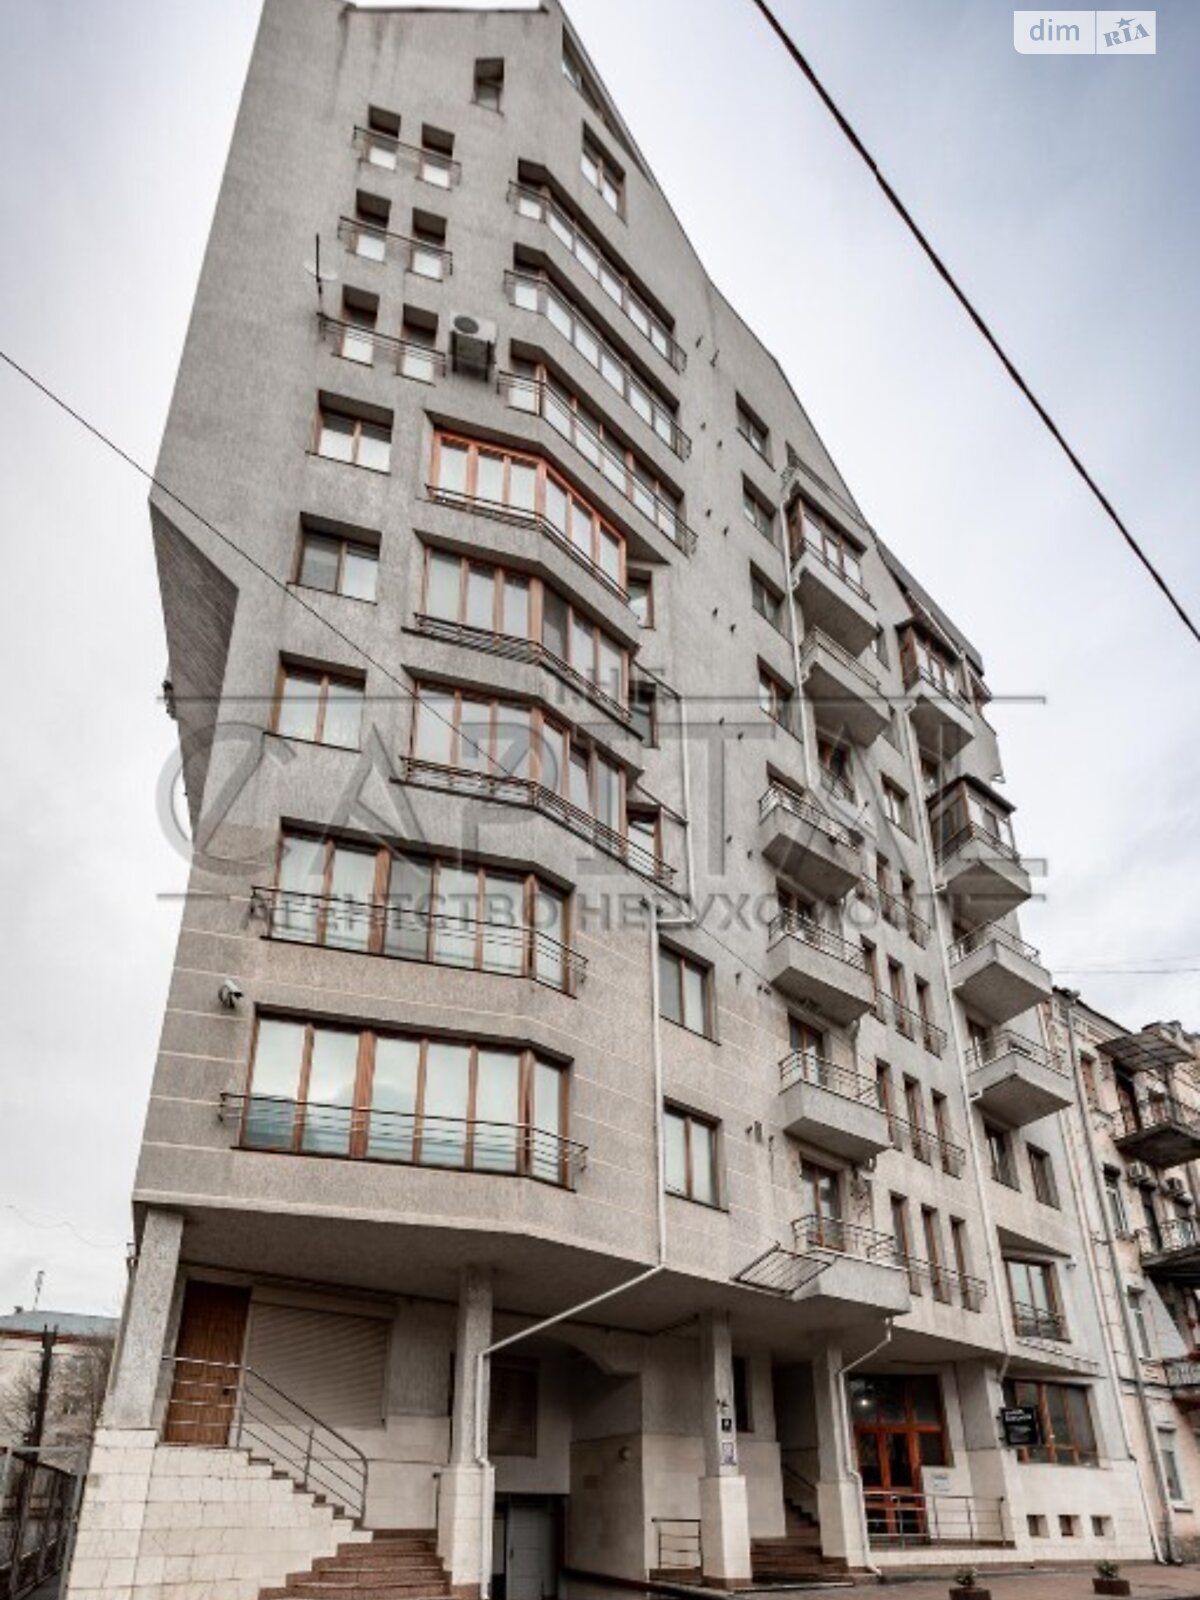 Аренда офисного помещения в Киеве, Бутышев (Иванова) переулок 13, помещений - 5, этаж - 1 фото 1